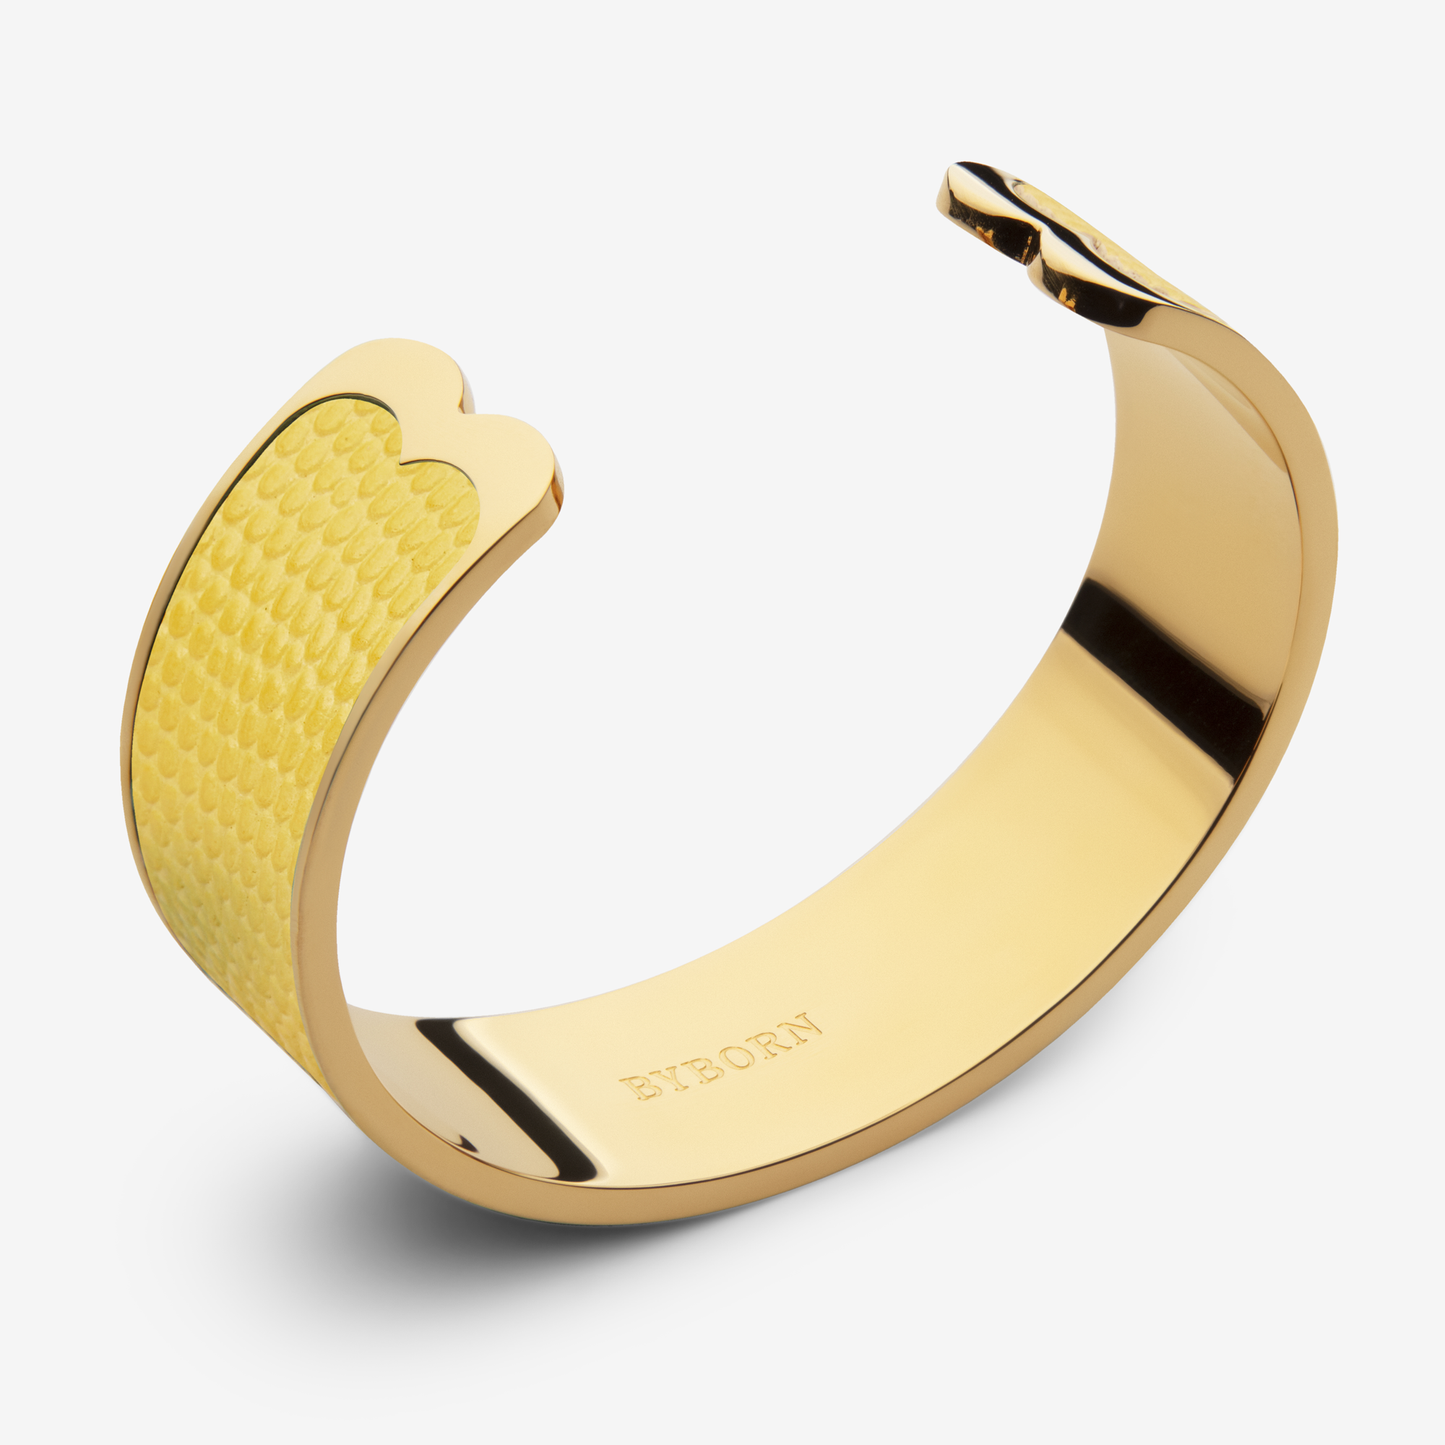 Gold Bracelets Large - 1,644 For Sale on 1stDibs | large gold bracelet, big  bracelet gold, large gold bracelets